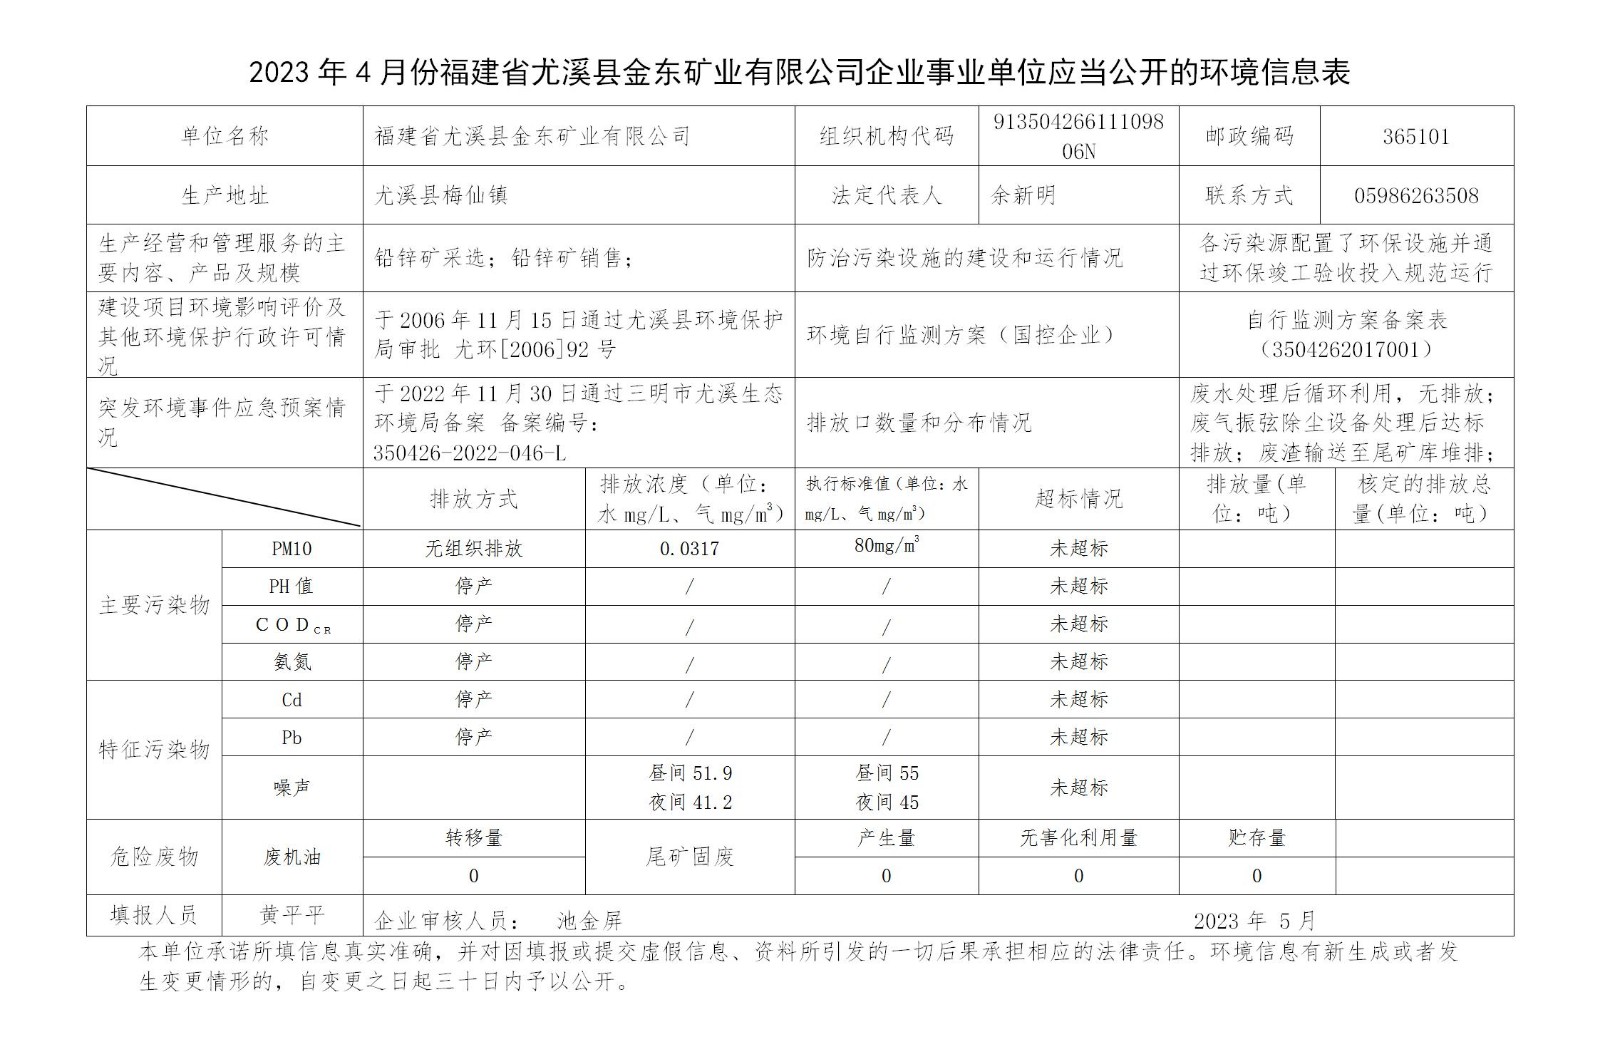 2023年4月份福建省尤溪縣金東礦業有限公司企業事業單位應當公開的環境信息表_01.jpg